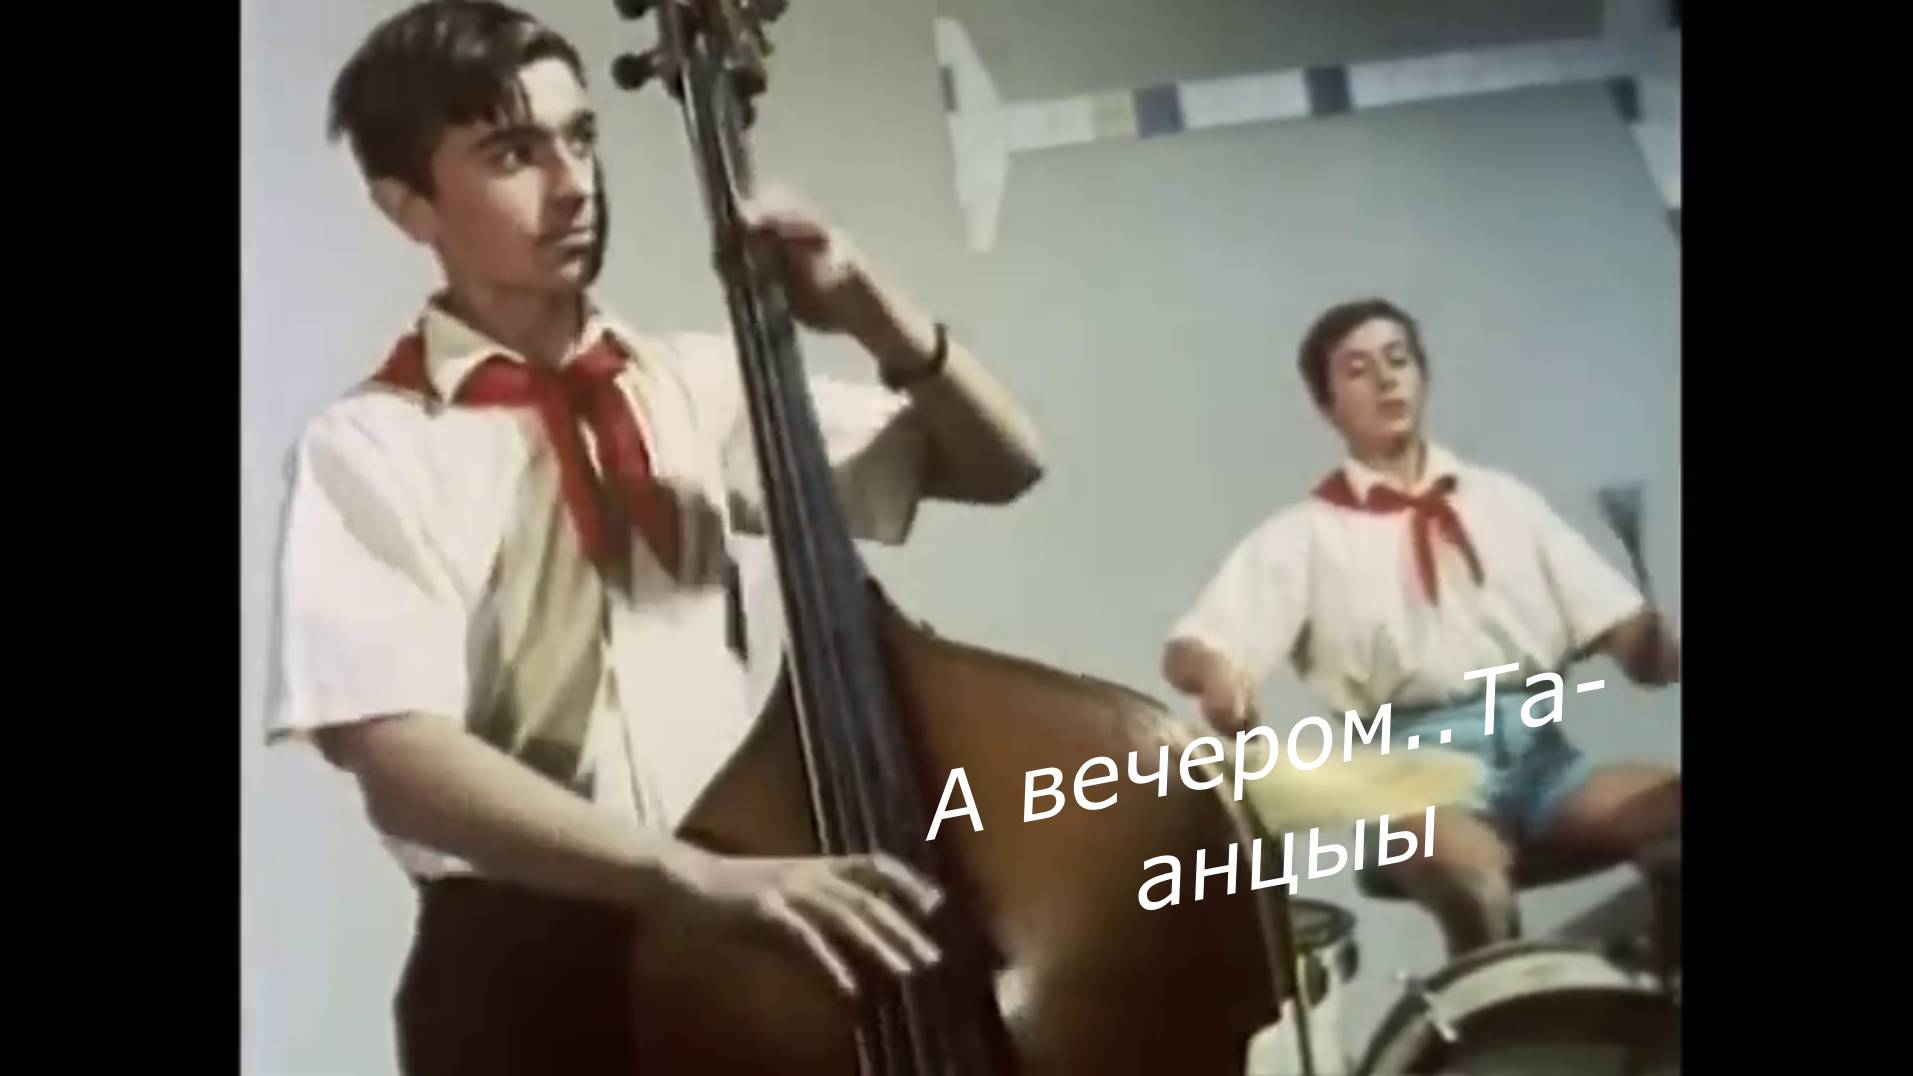 Под эту песню танцевали твист в СССР, хотя она вовсе не советская..